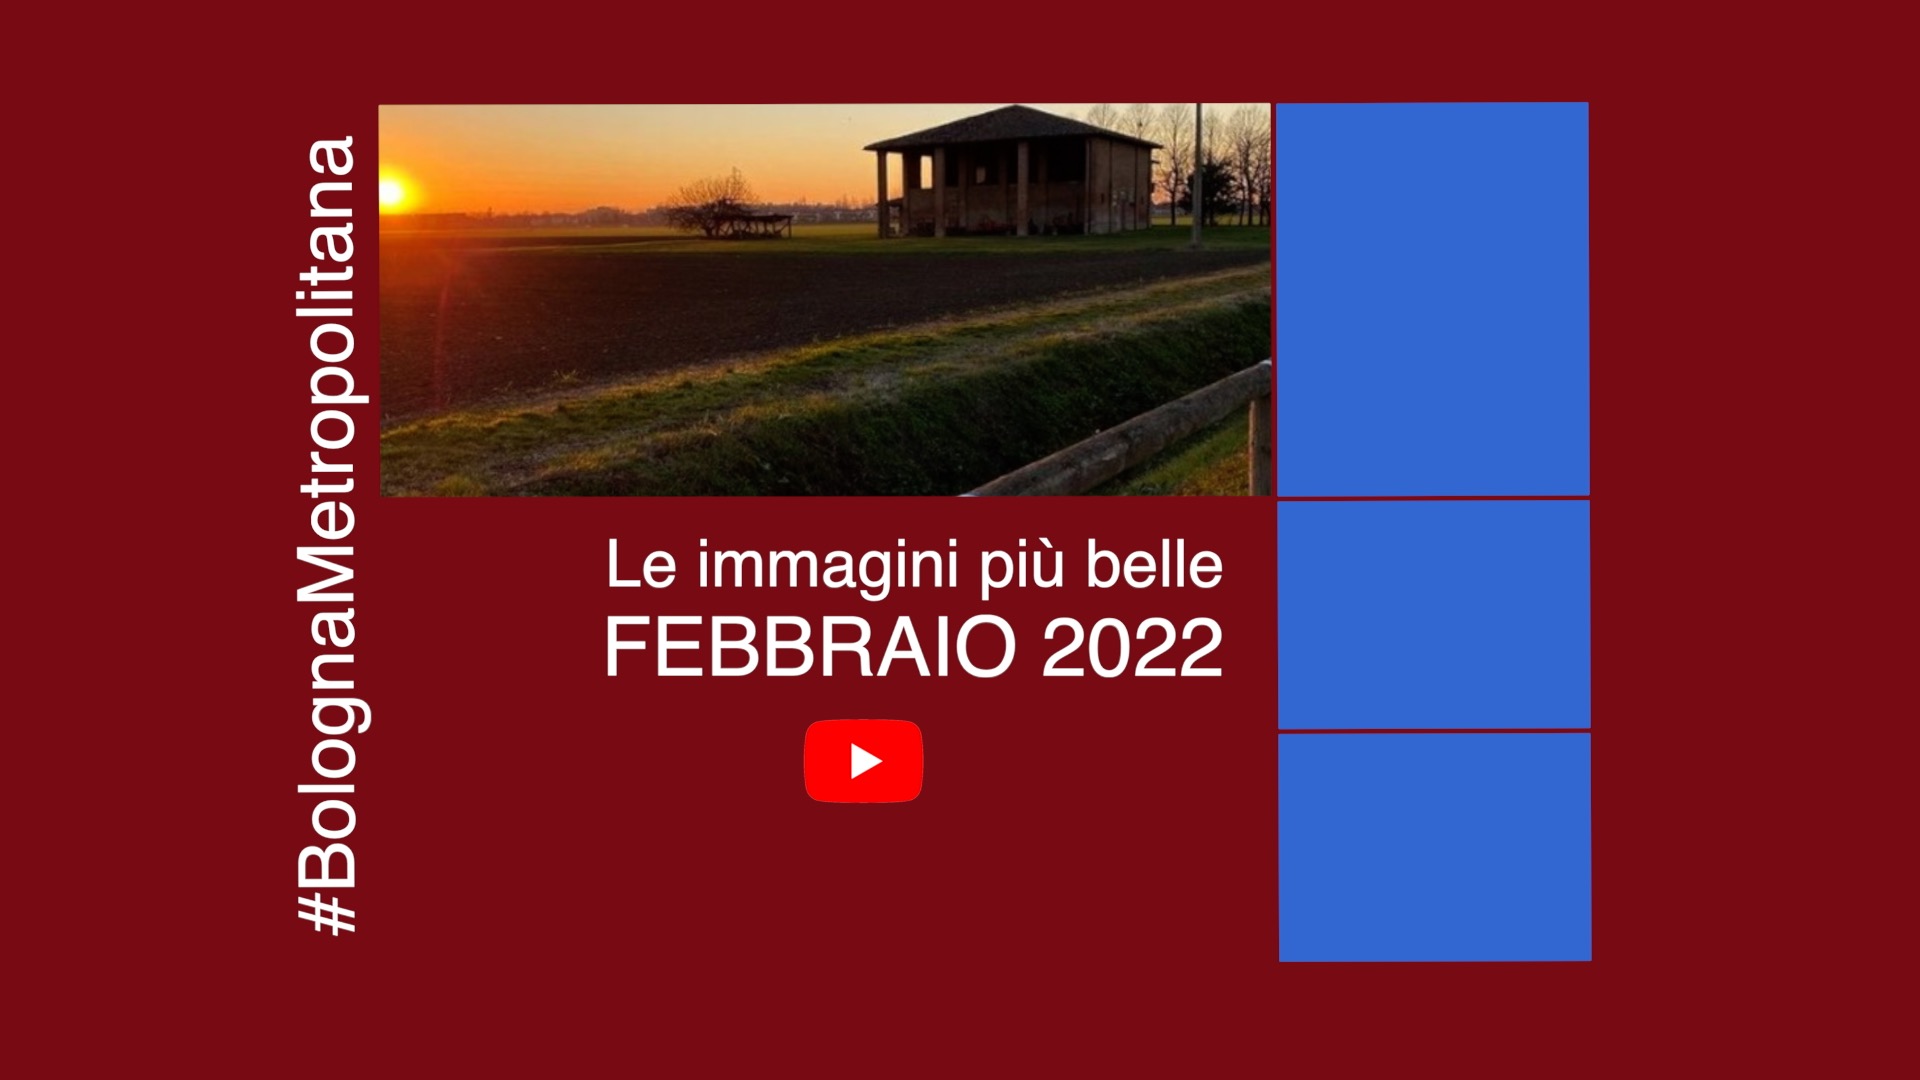 #BolognaMetropolitana - Le immagini più belle di febbraio 2022